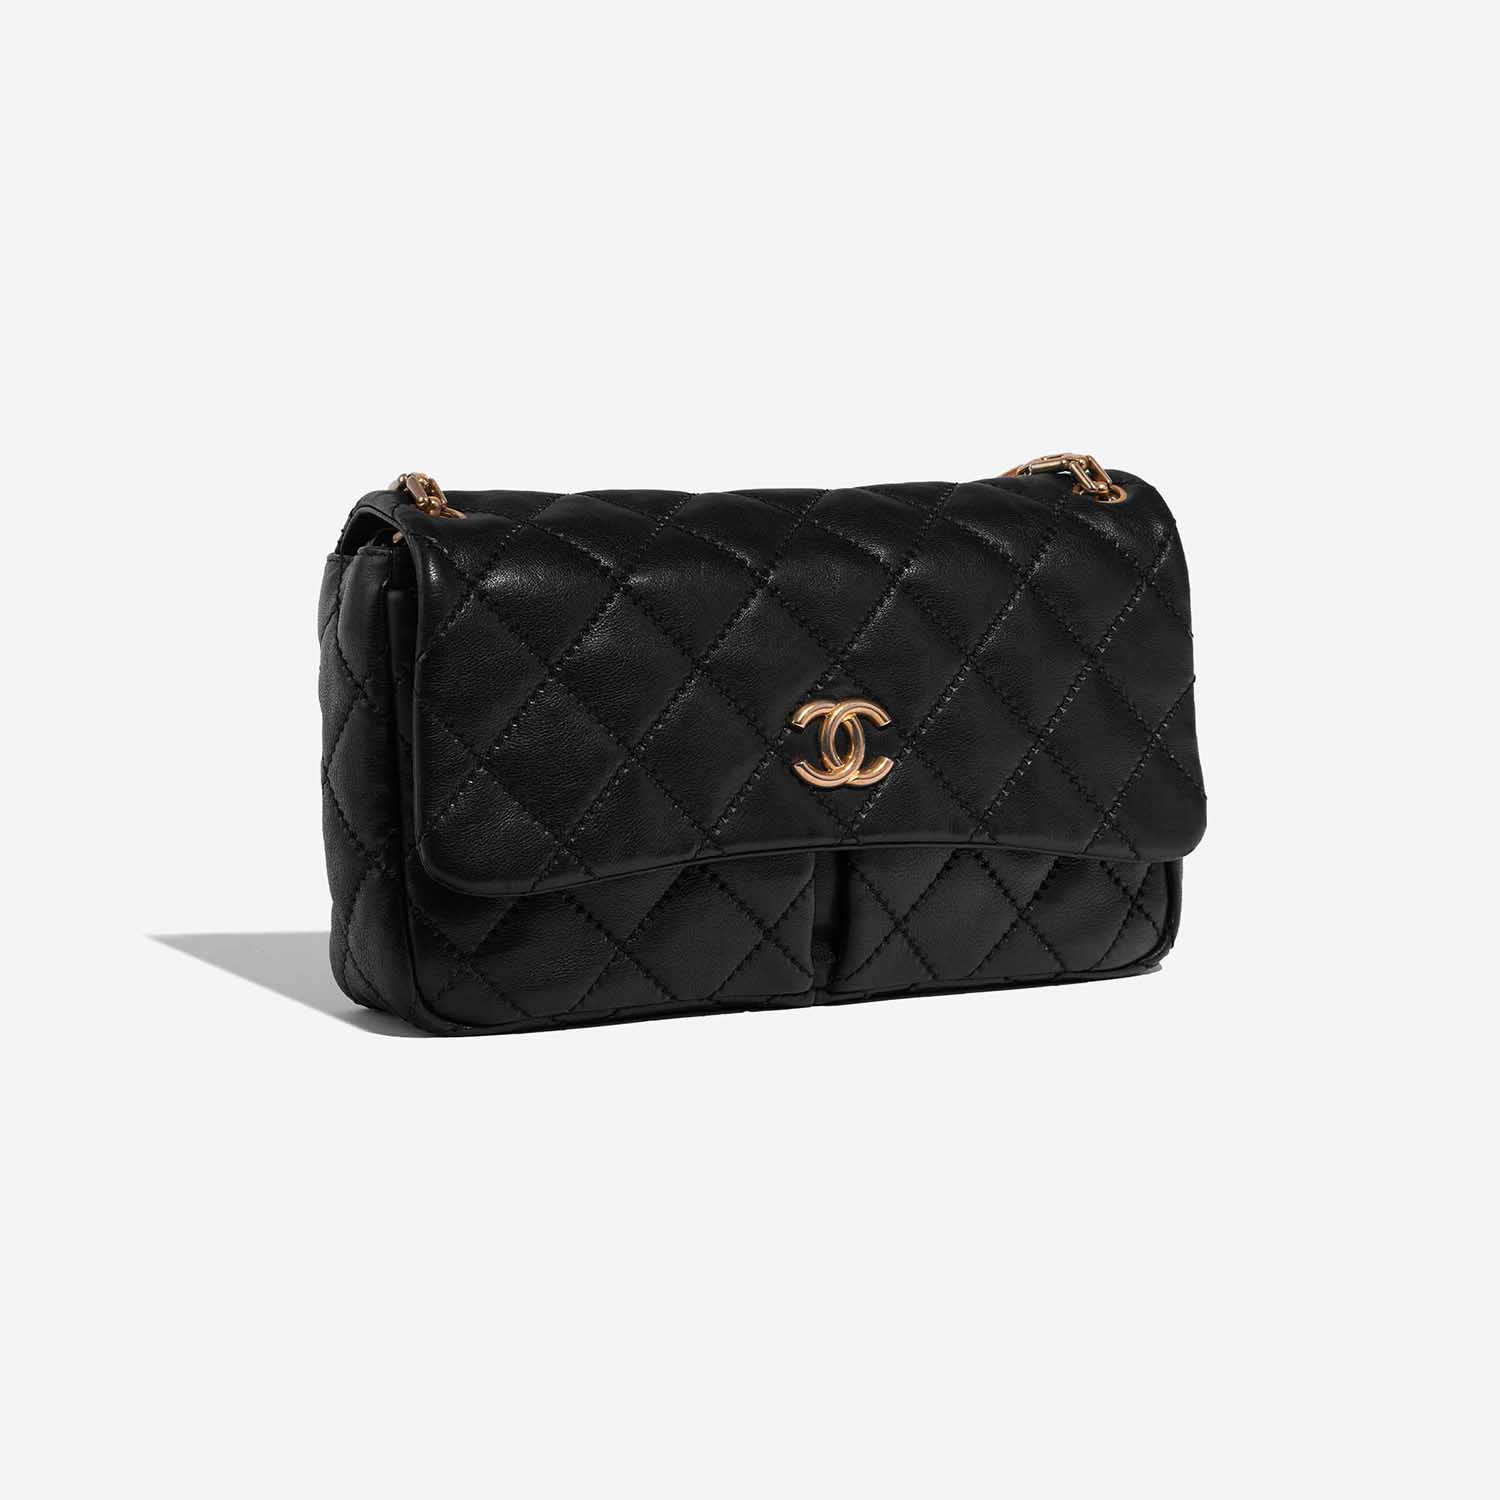 Chanel Timeless Jumbo Black Side Front | Verkaufen Sie Ihre Designer-Tasche auf Saclab.com